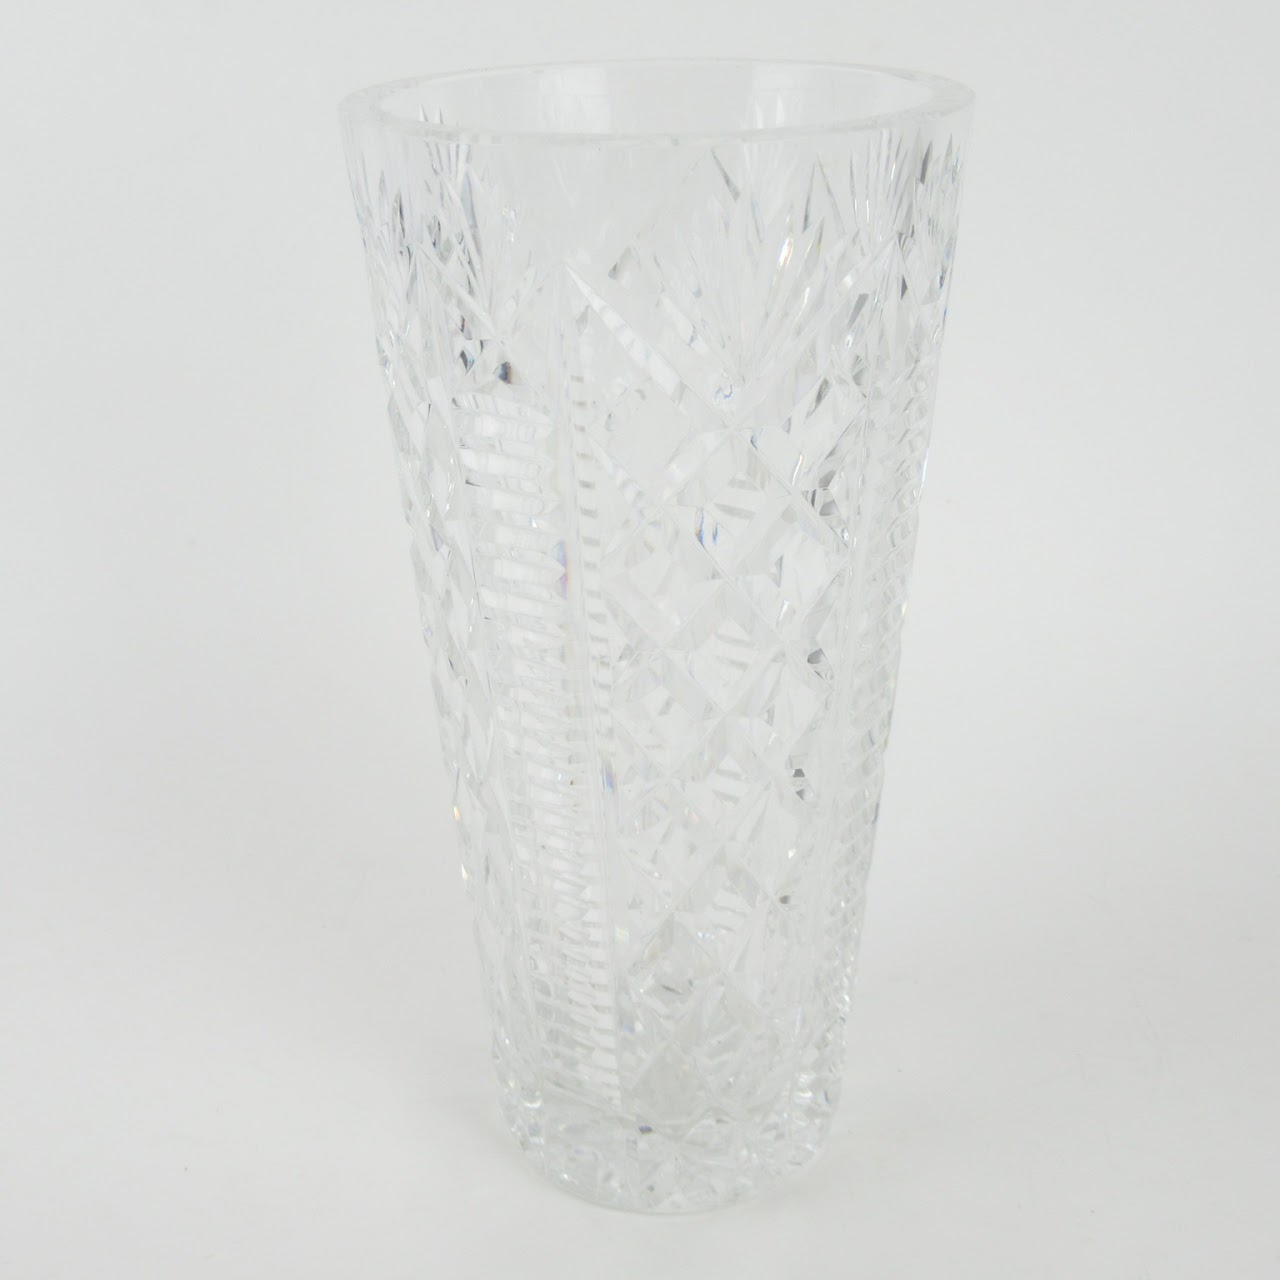 Waterford Cut Crystal Vase